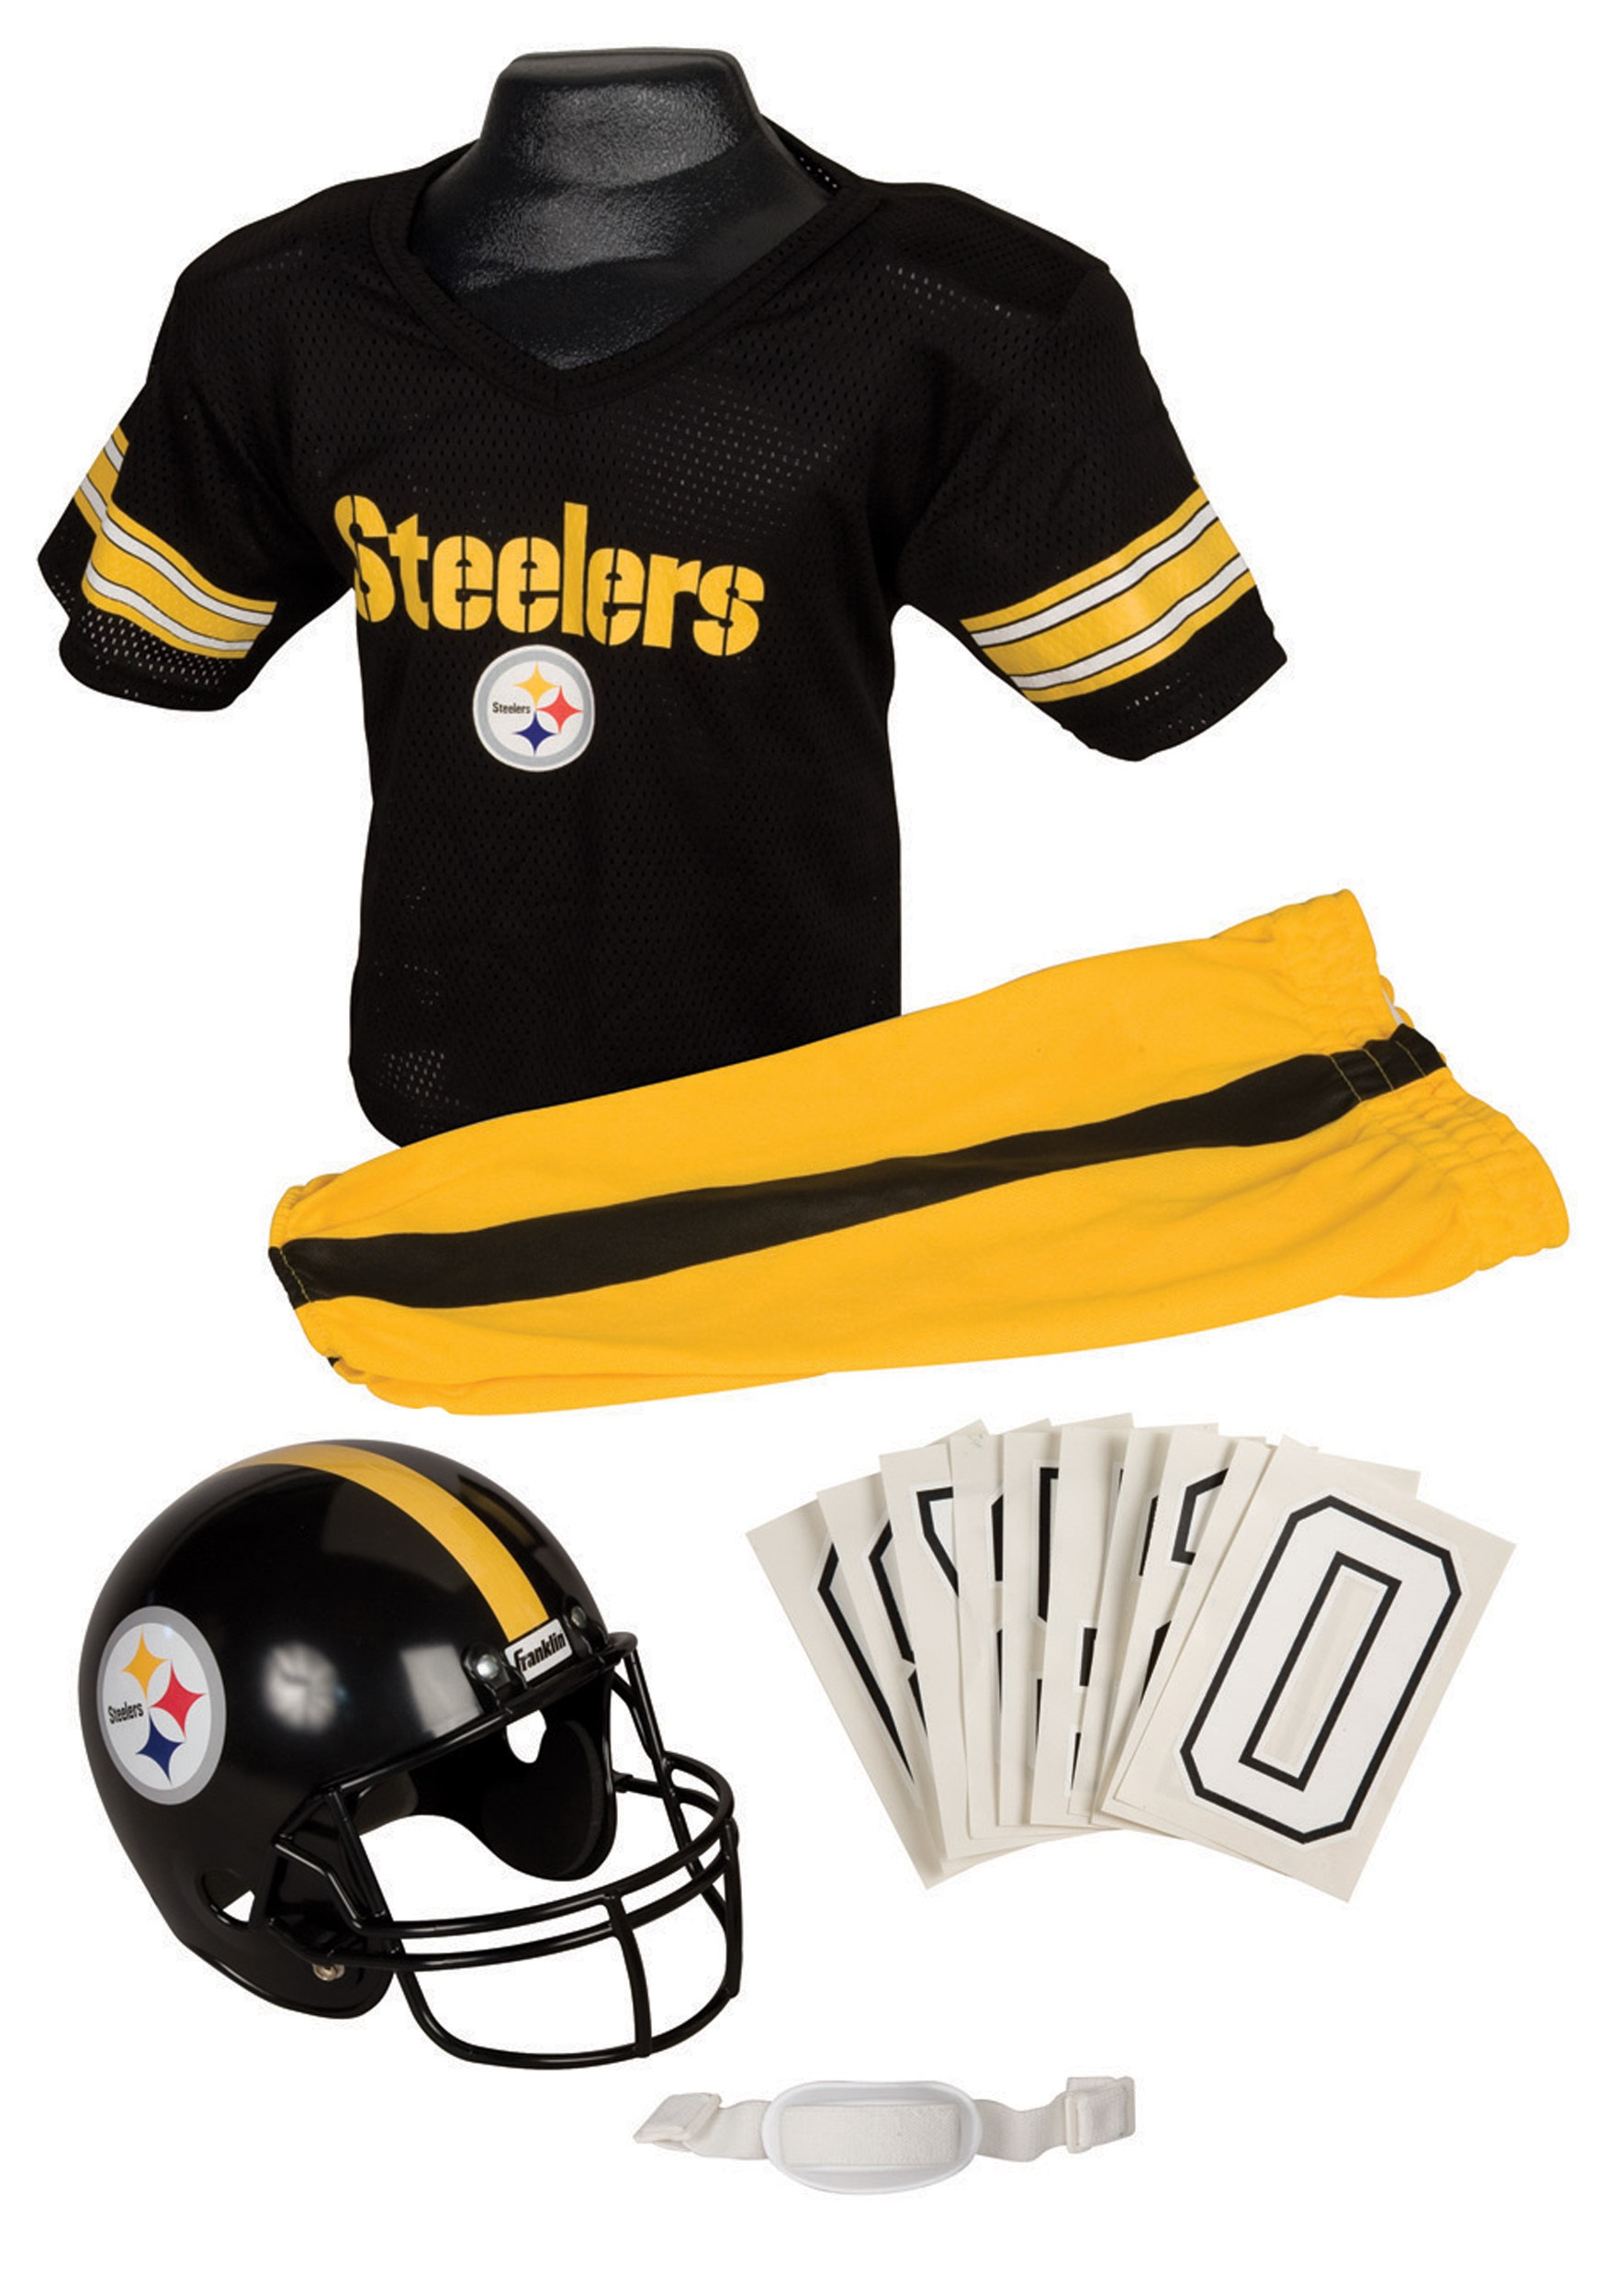 Kid’s NFL Steelers Uniform Costume